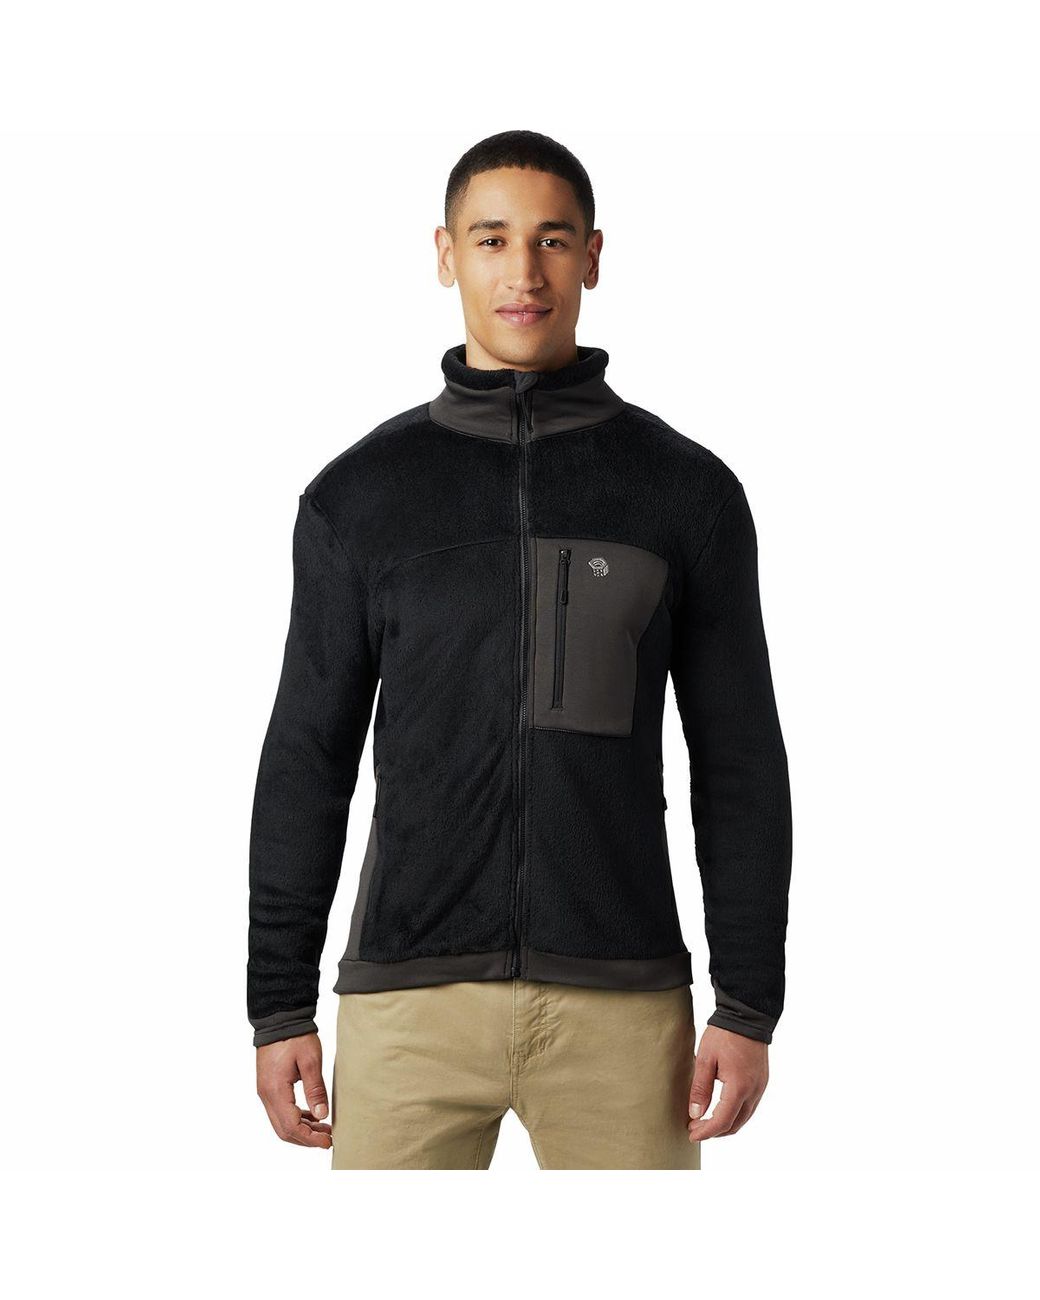 Mountain Hardwear Monkey Man 2 Fleece Jacket in Black for Men - Lyst